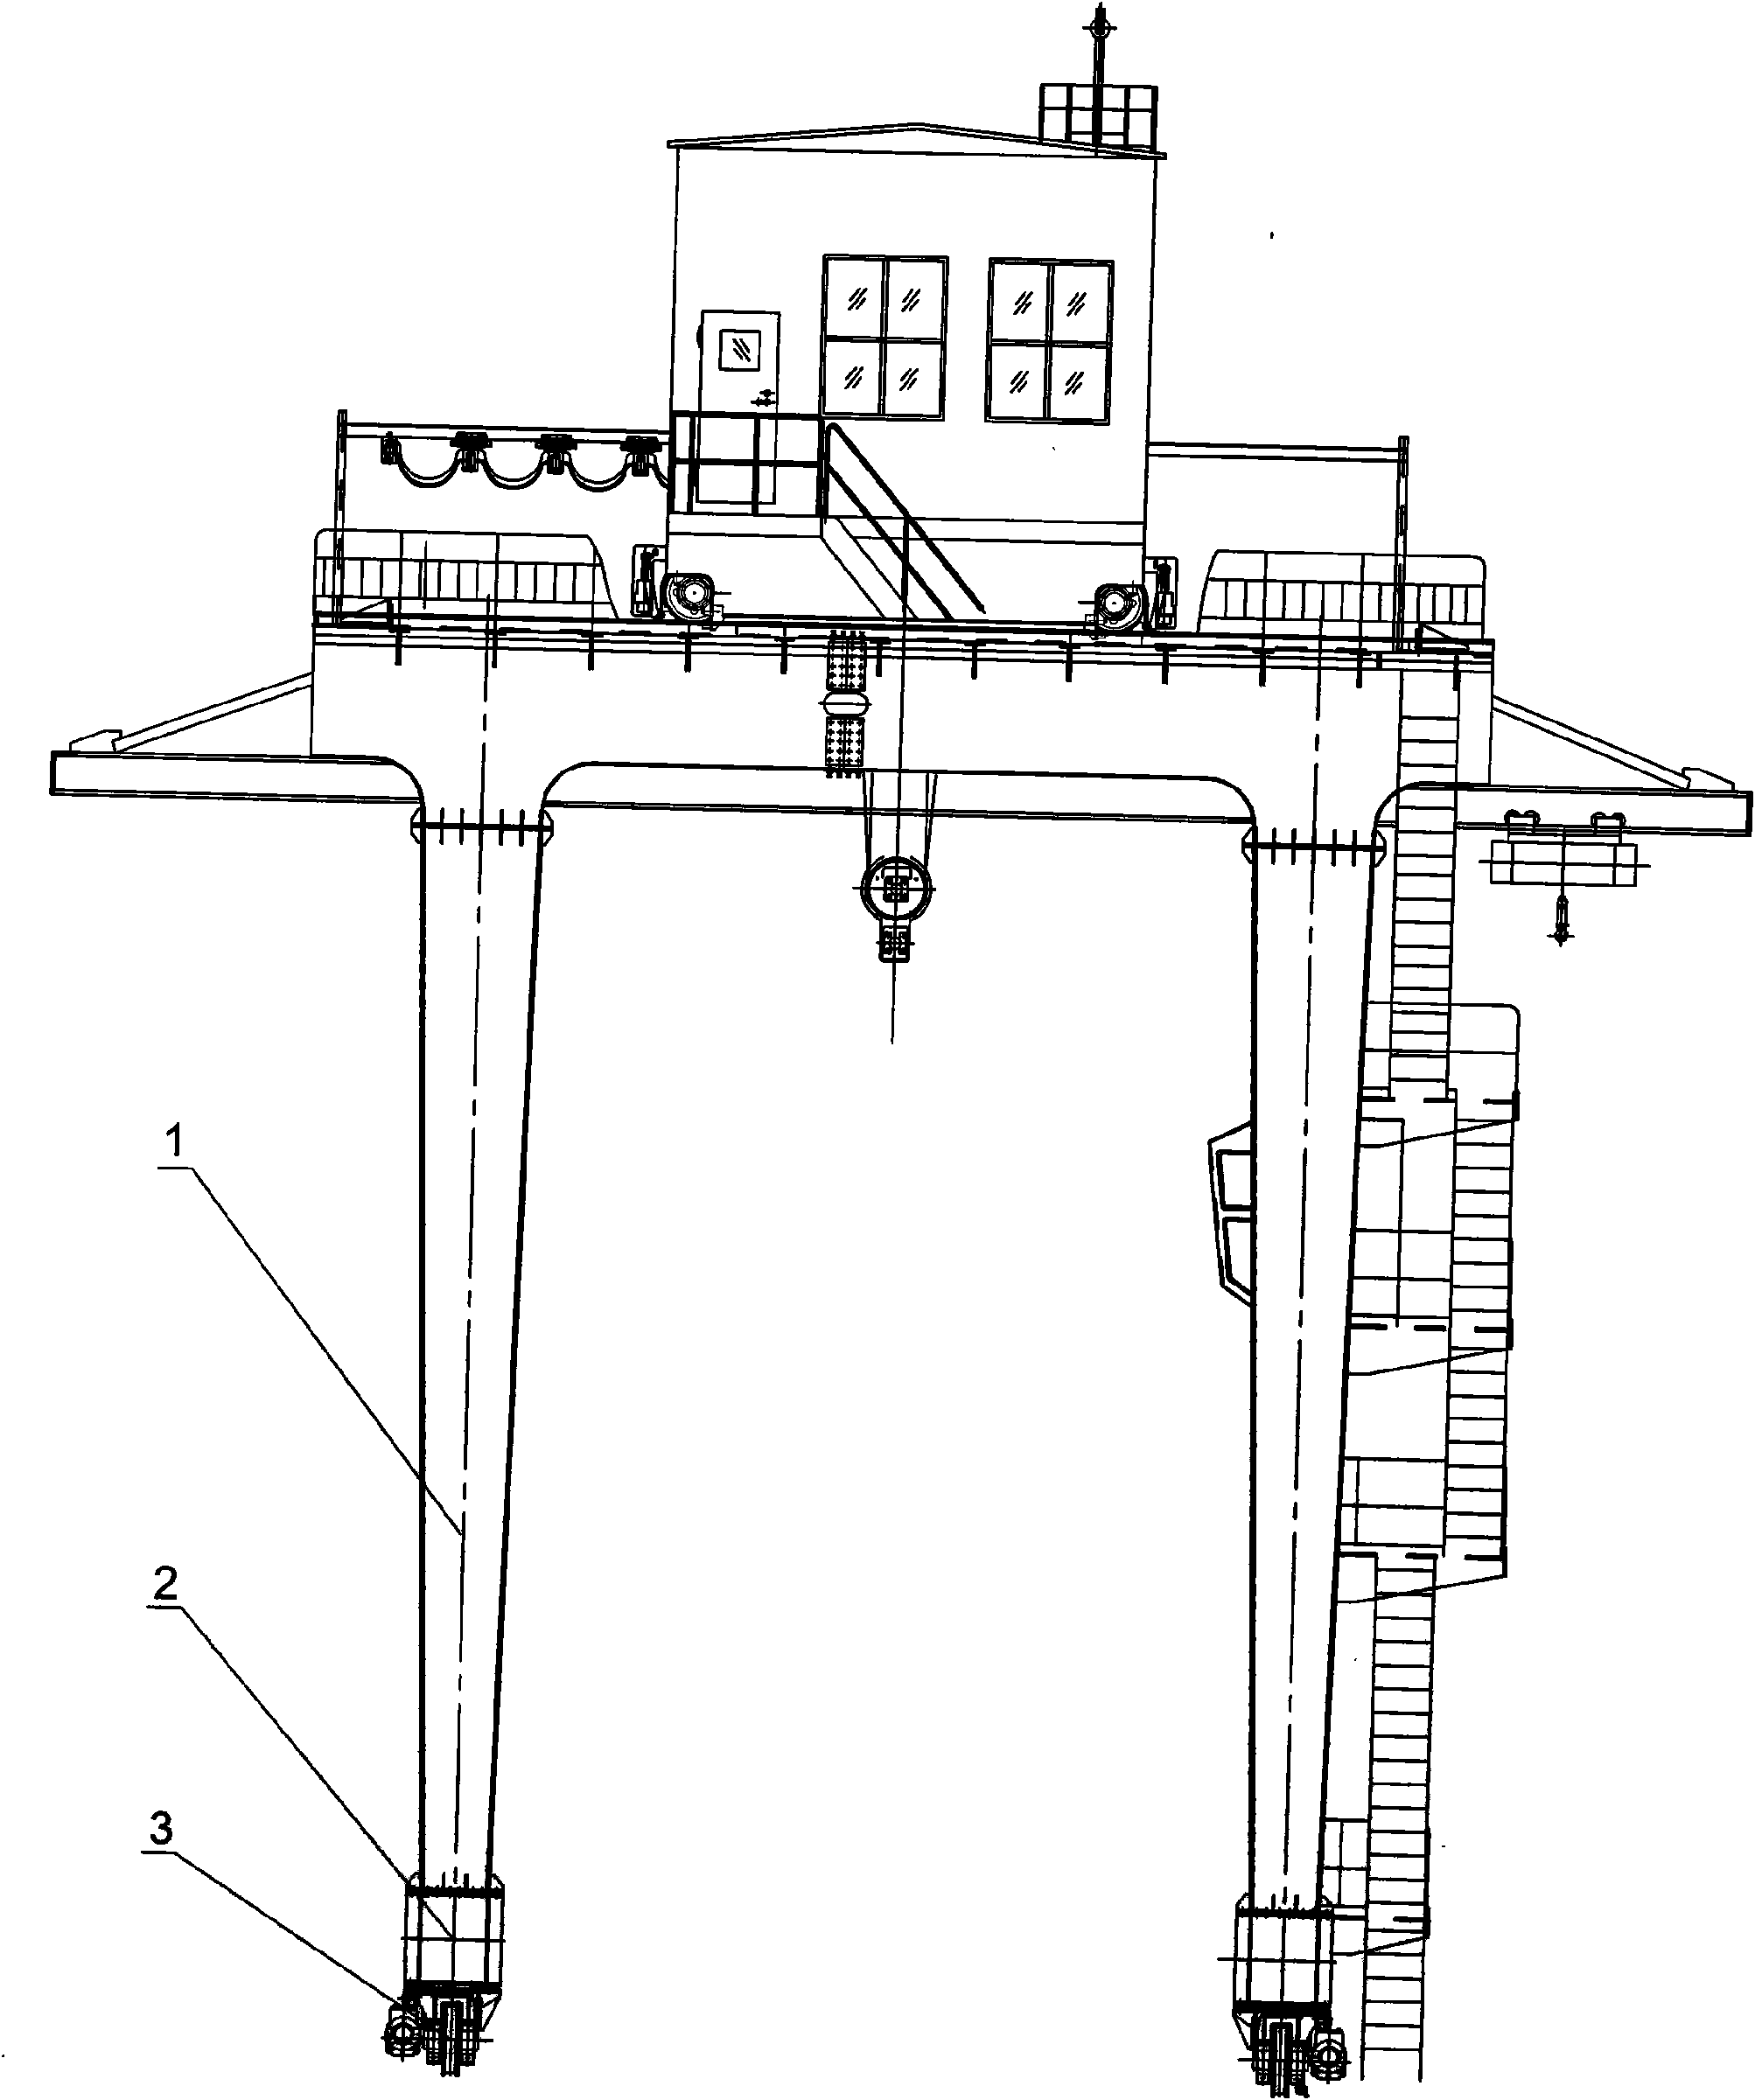 Portal crane